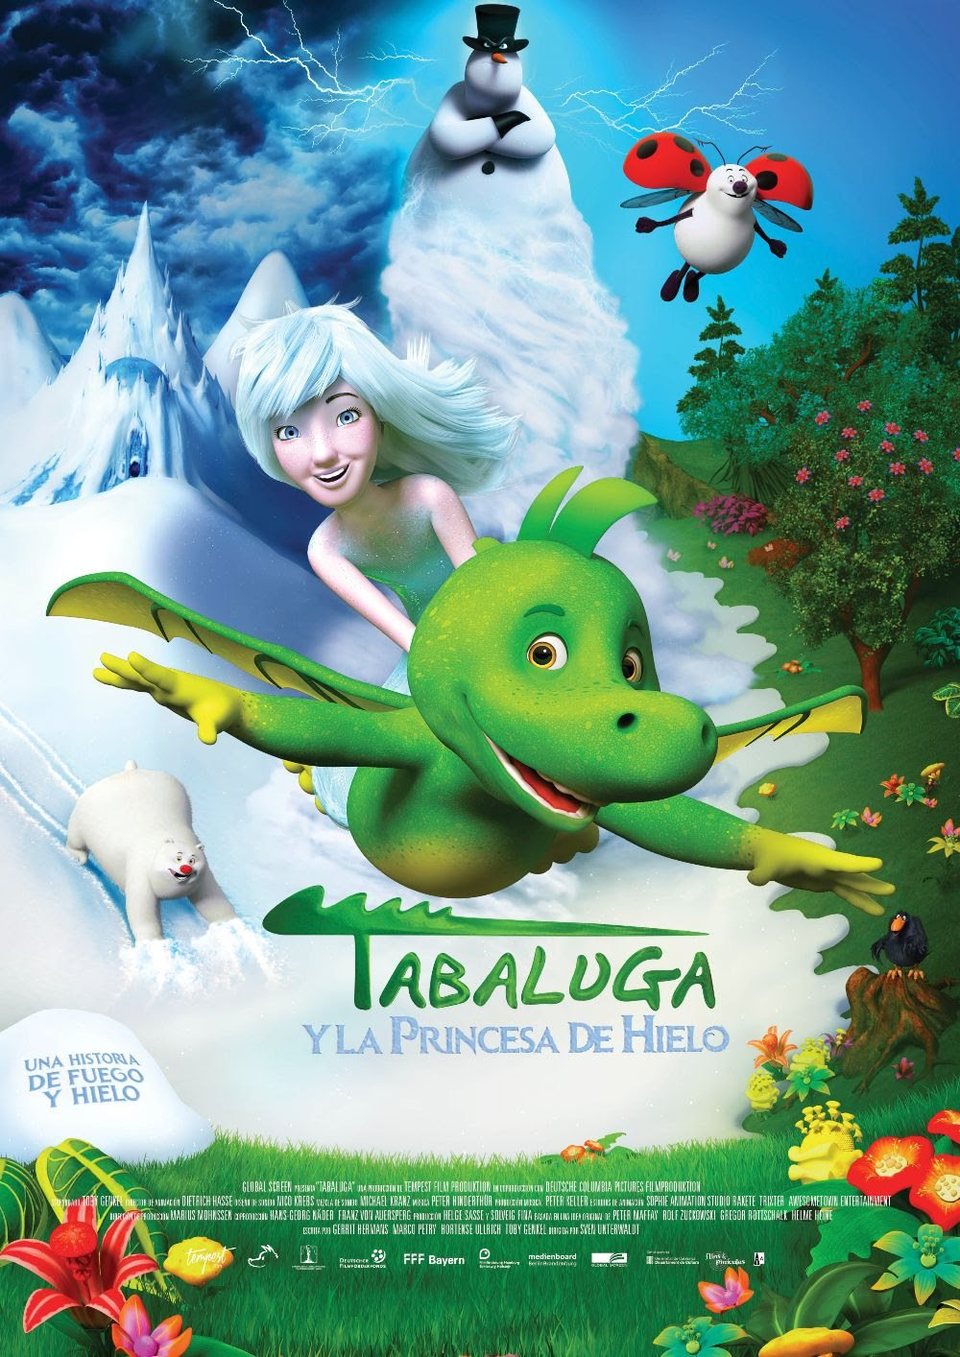 Cartel de Tabaluga y la princesa de hielo - Poster 'Tabaluga' en español